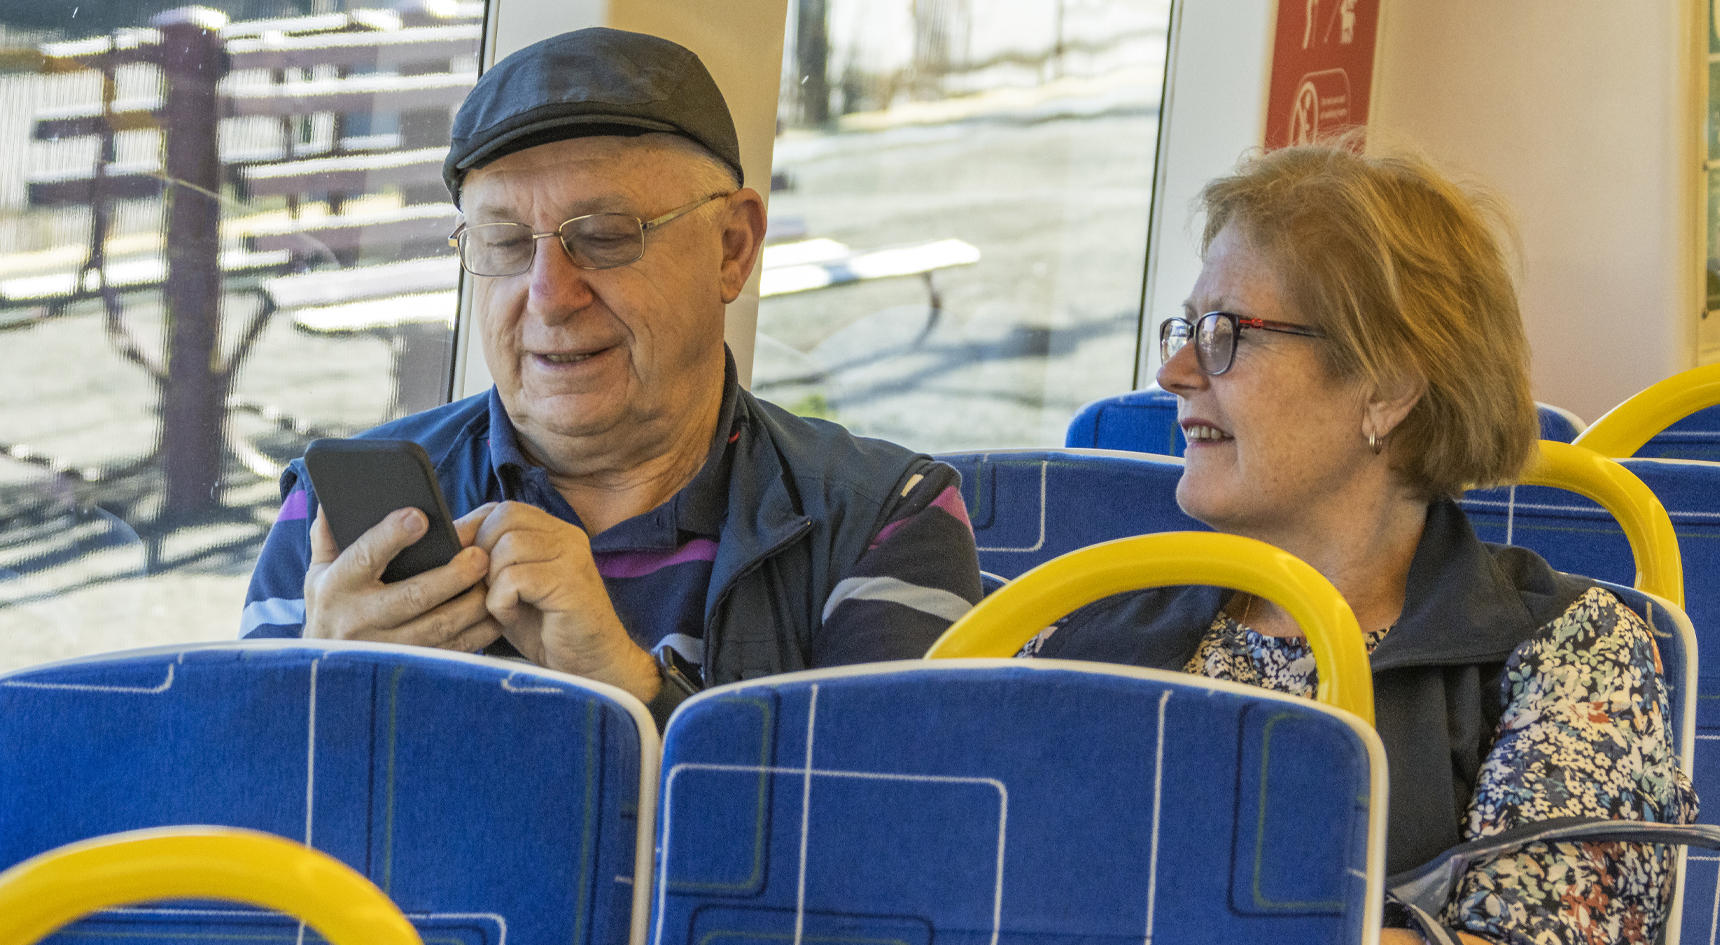 Elderly Train Commuters